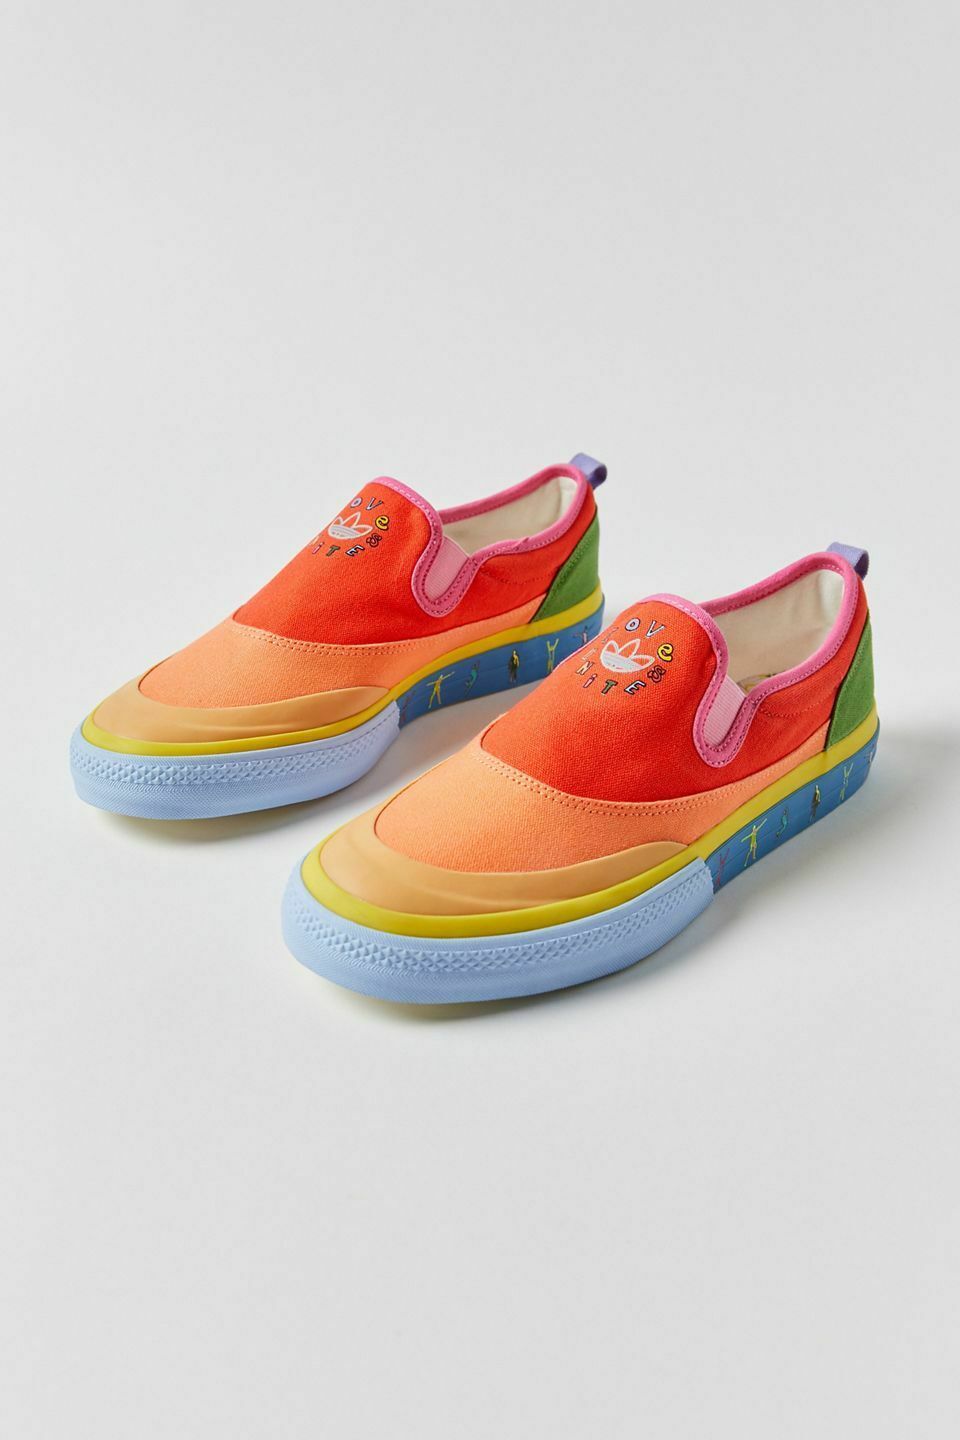 NEW Adidas Nizza Rainbow Slip-On Shoes Pride sz W 10 / M 8.5 - $80.04